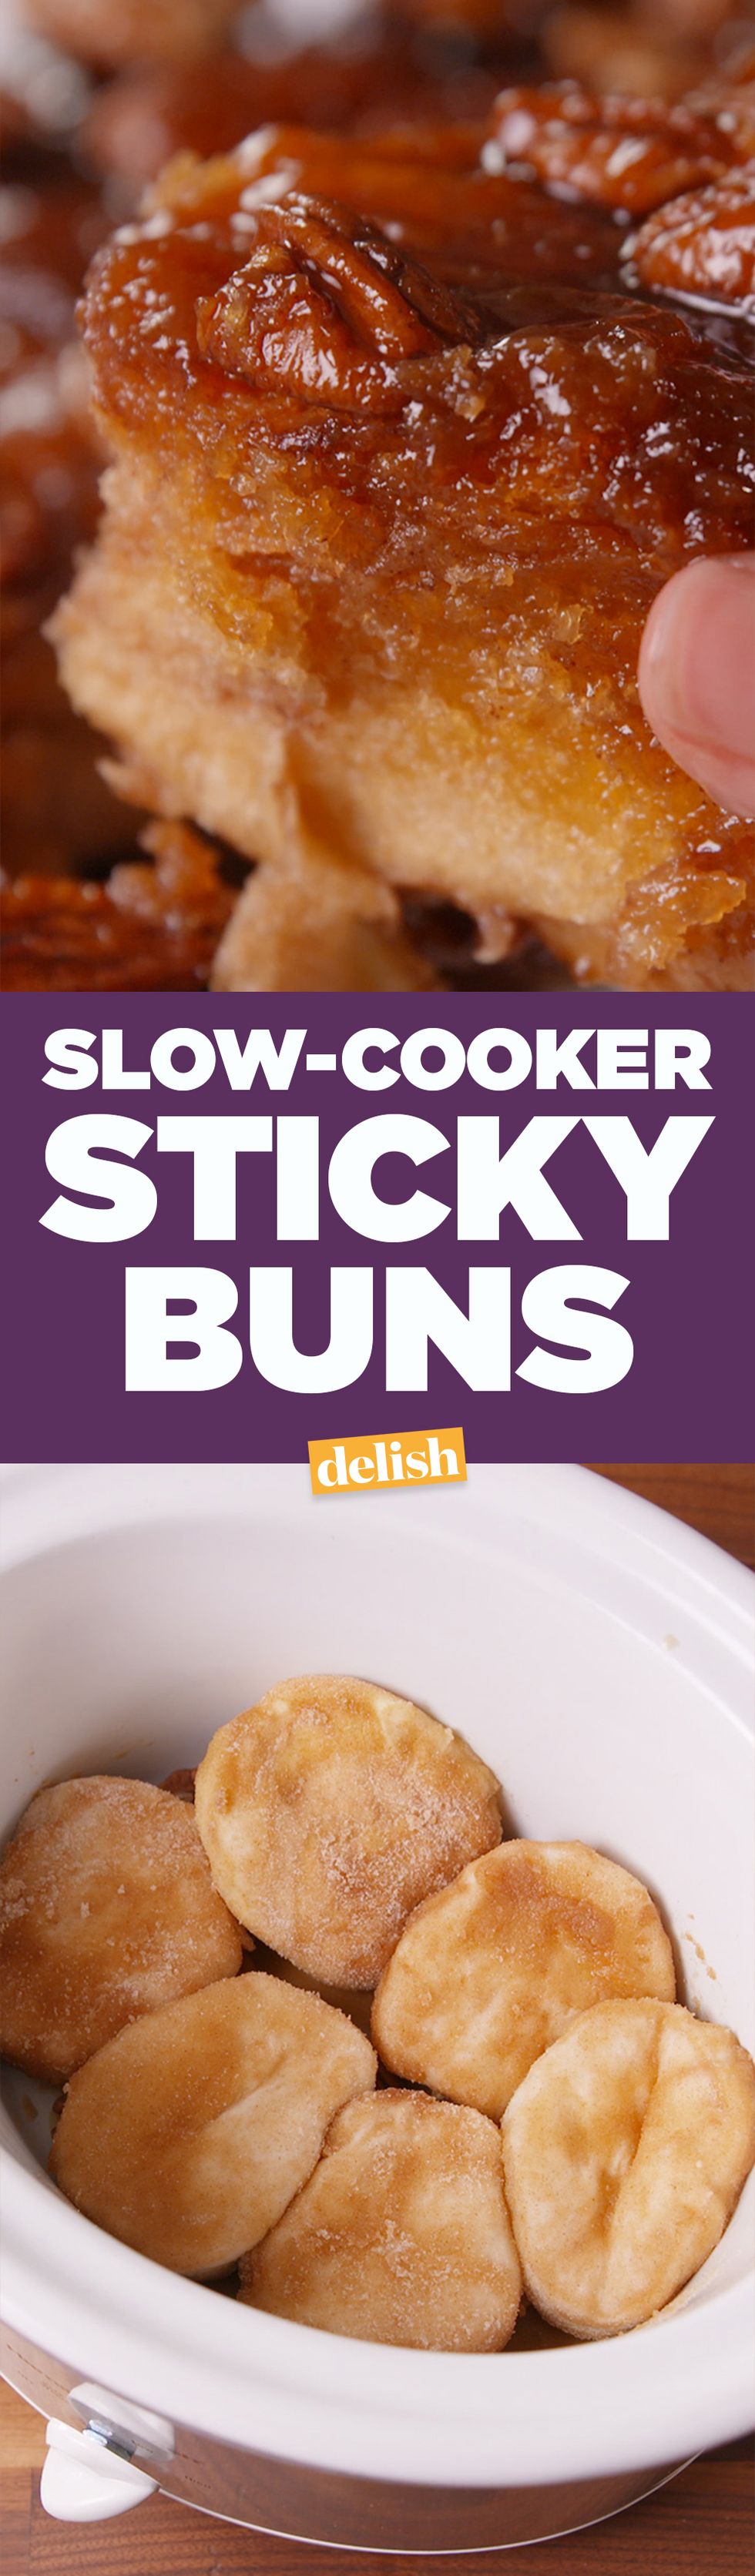 Slow-Cooker Sticky Buns